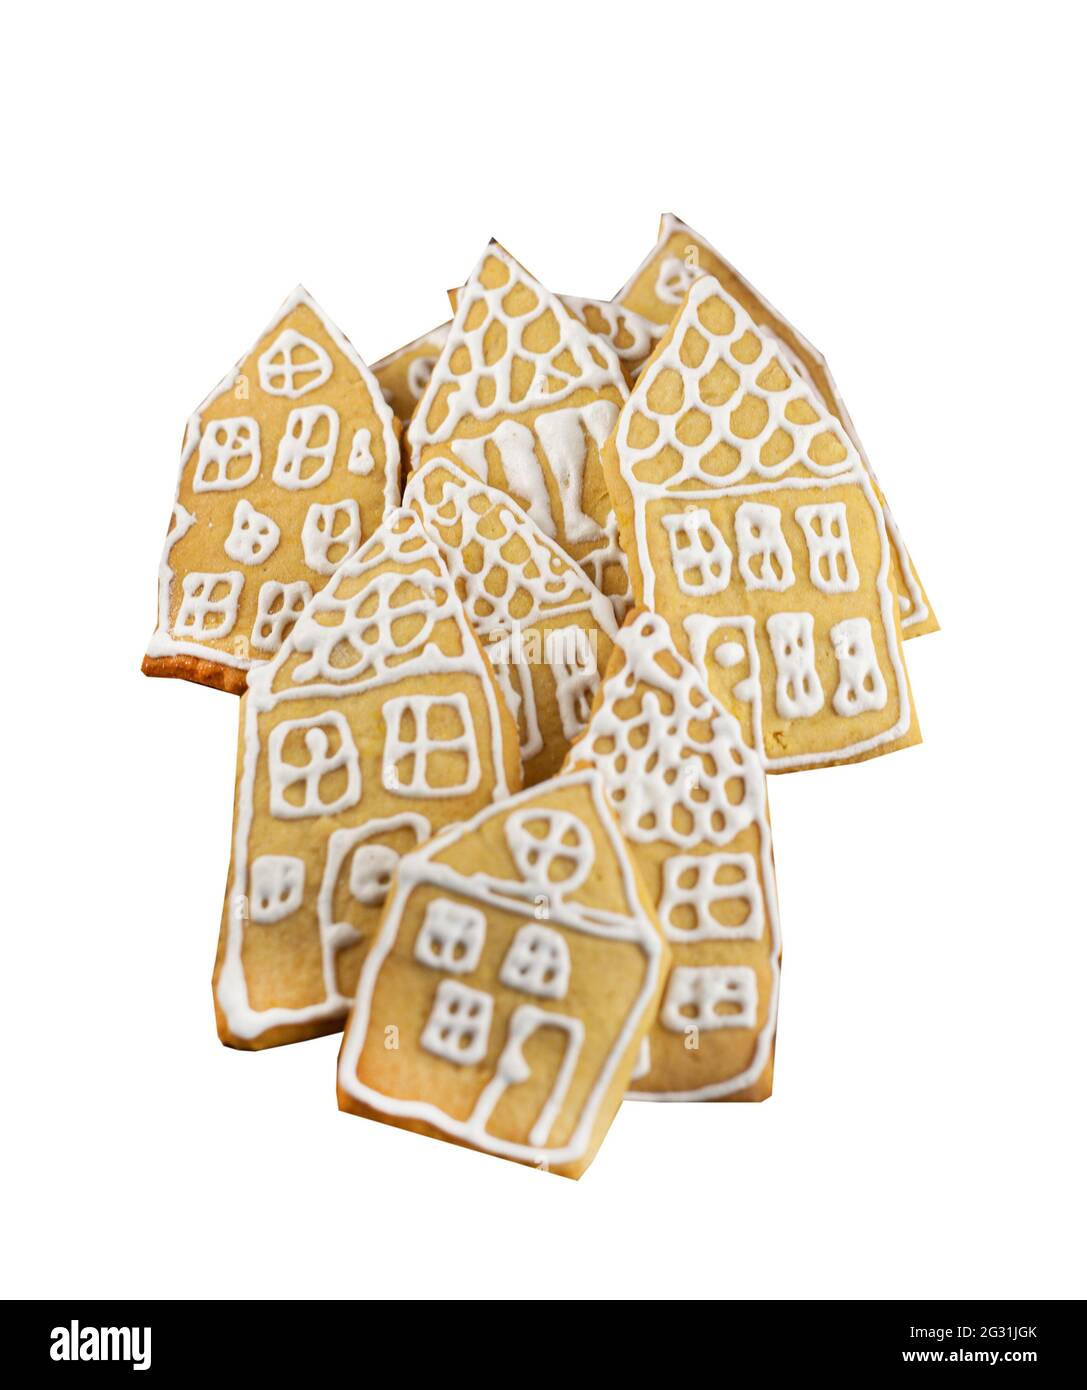 Biscotti di pan di zenzero isolati su uno sfondo bianco. Torte fatte in casa sotto forma di piccole case decorate con smalto bianco. Gruppo di pan di zenzero di Natale. Il cibo di Natale è un dolce, dessert. Foto Stock